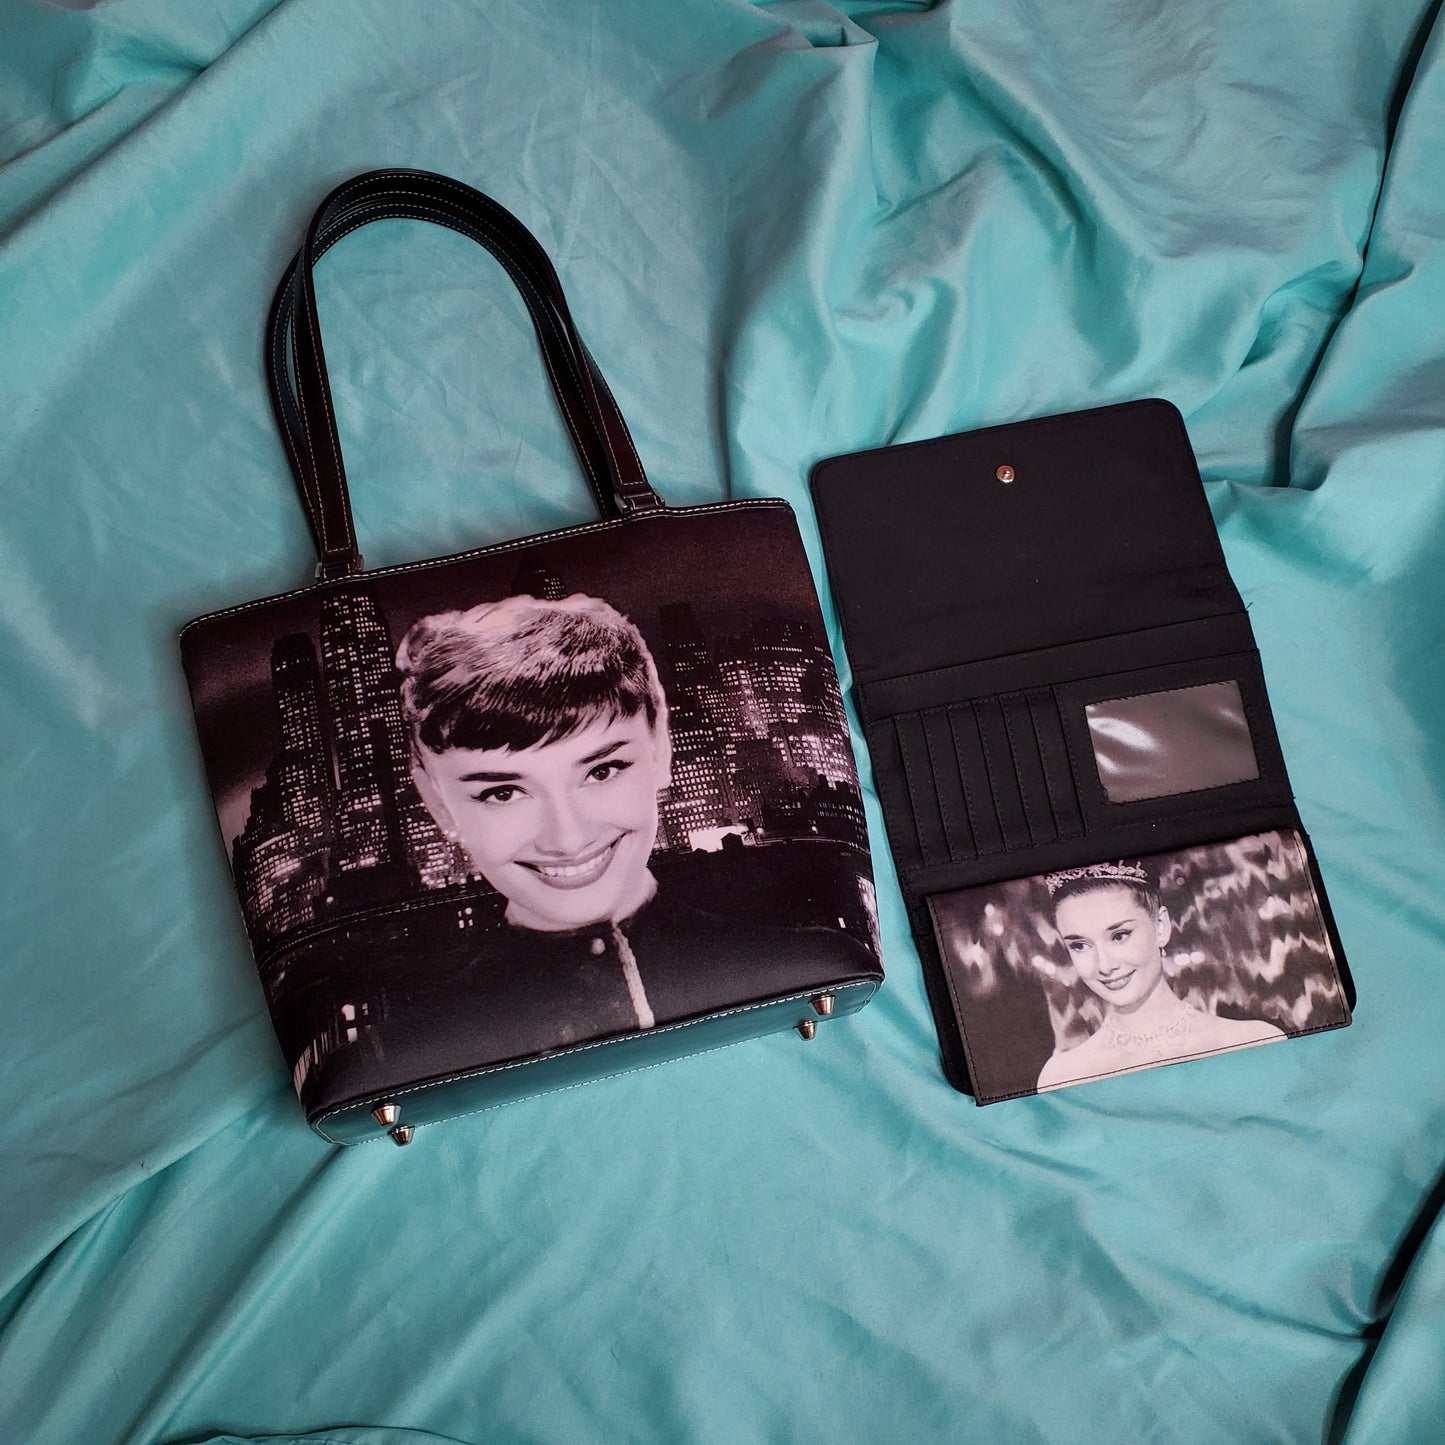 Audrey Hepburn bag + wallet